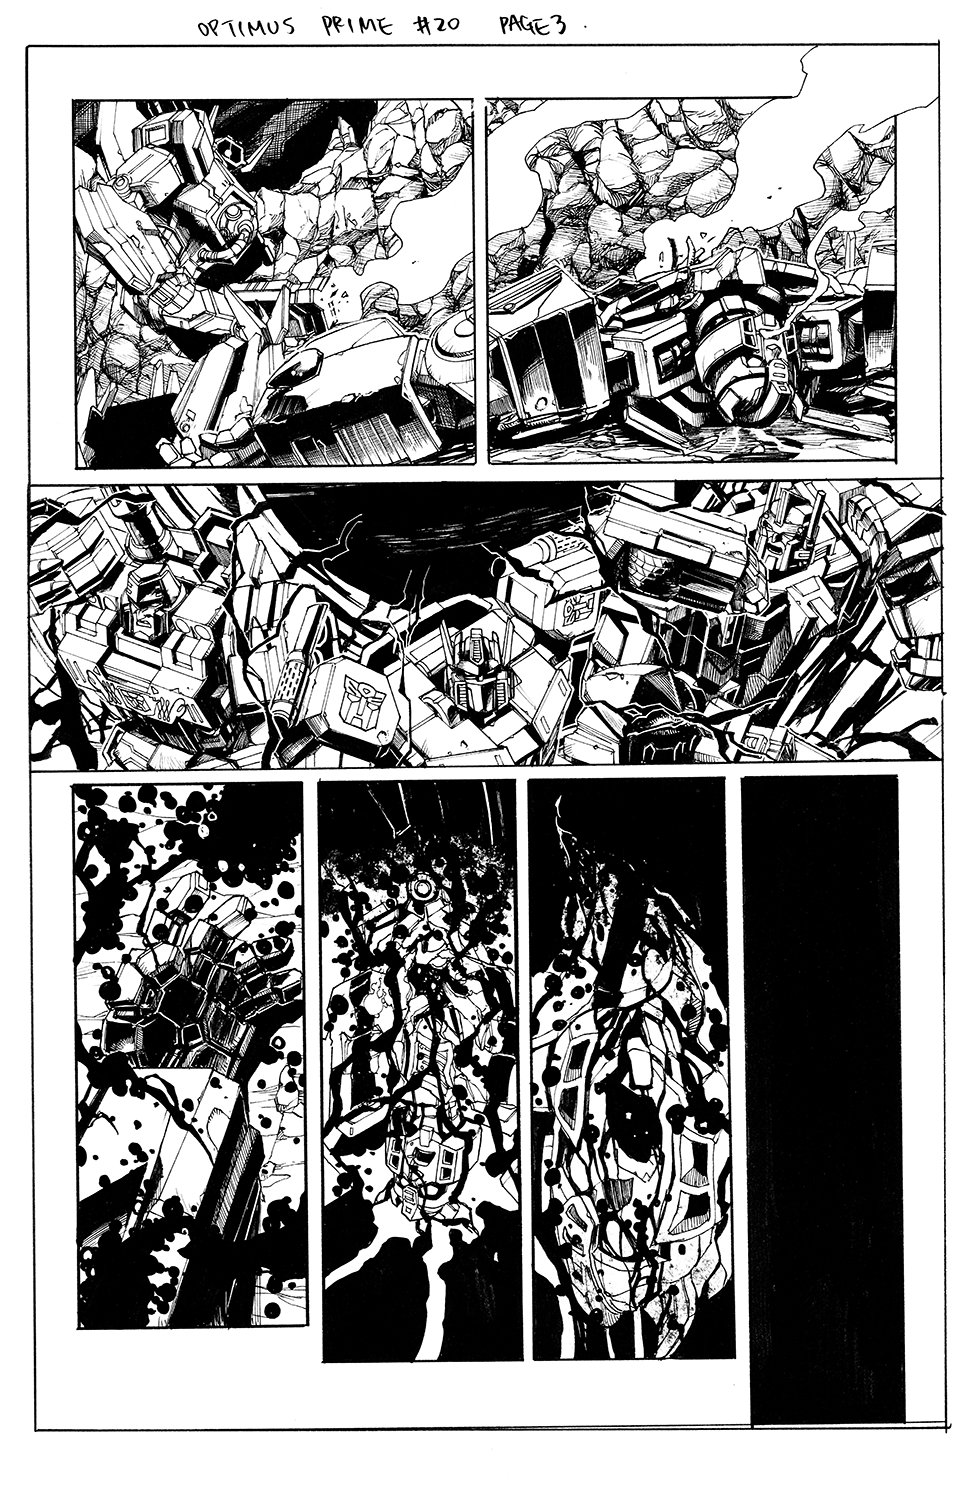 Optimus Prime #20 Page 03